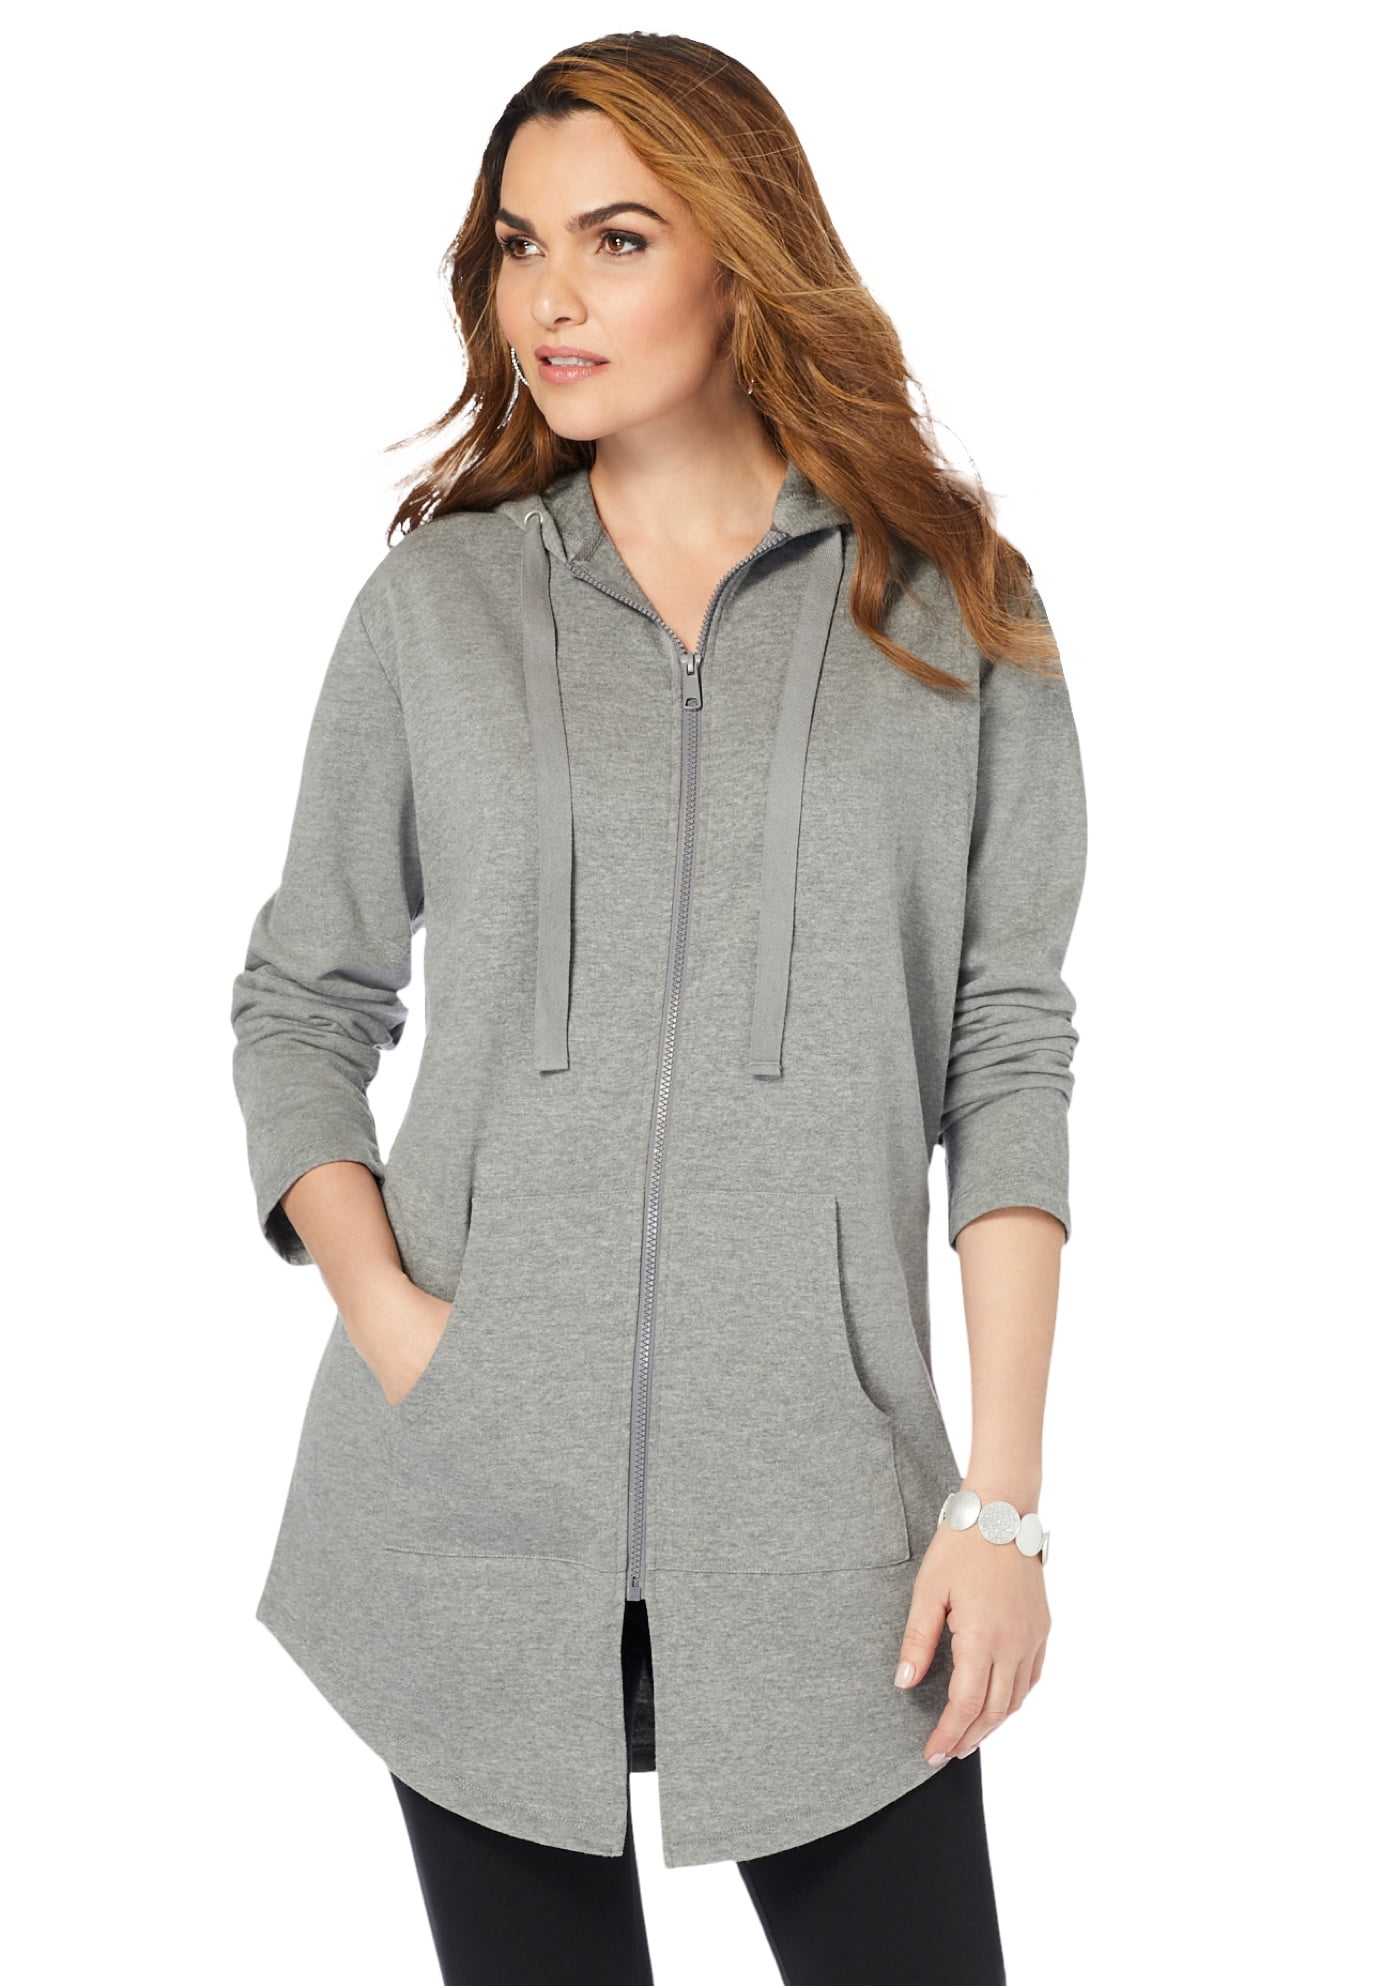 Roaman's Women's Plus Size Fleece Zip Hoodie Jacket Jacket - Walmart.com